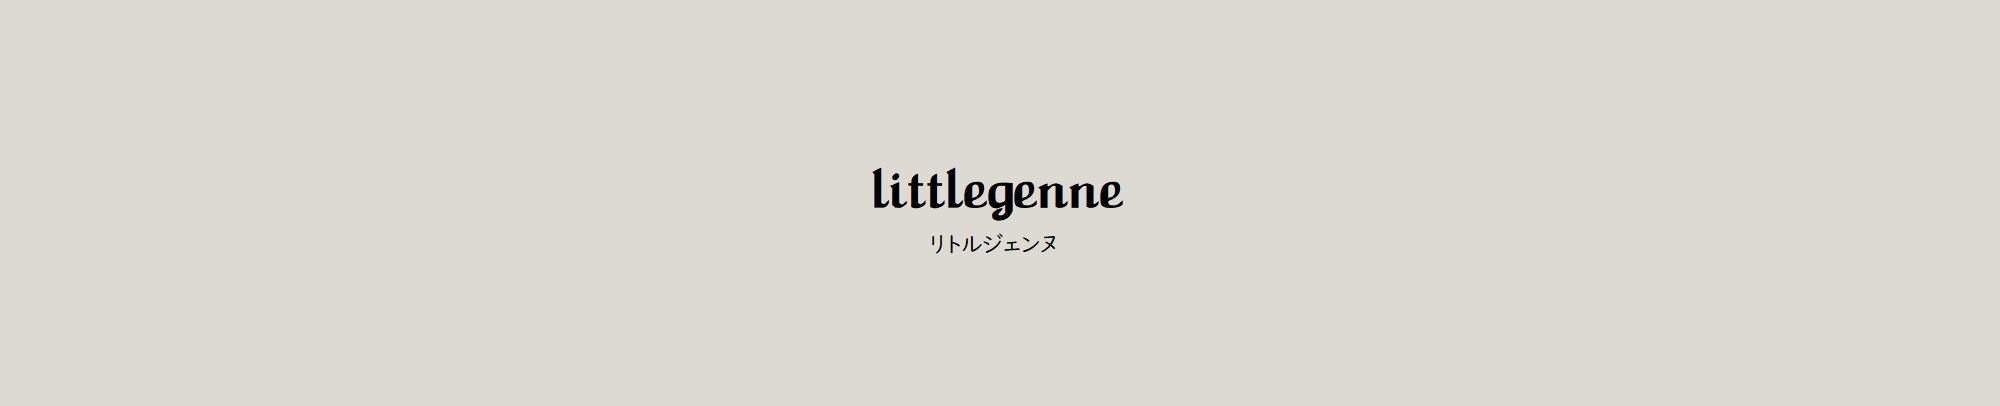 littlegenne